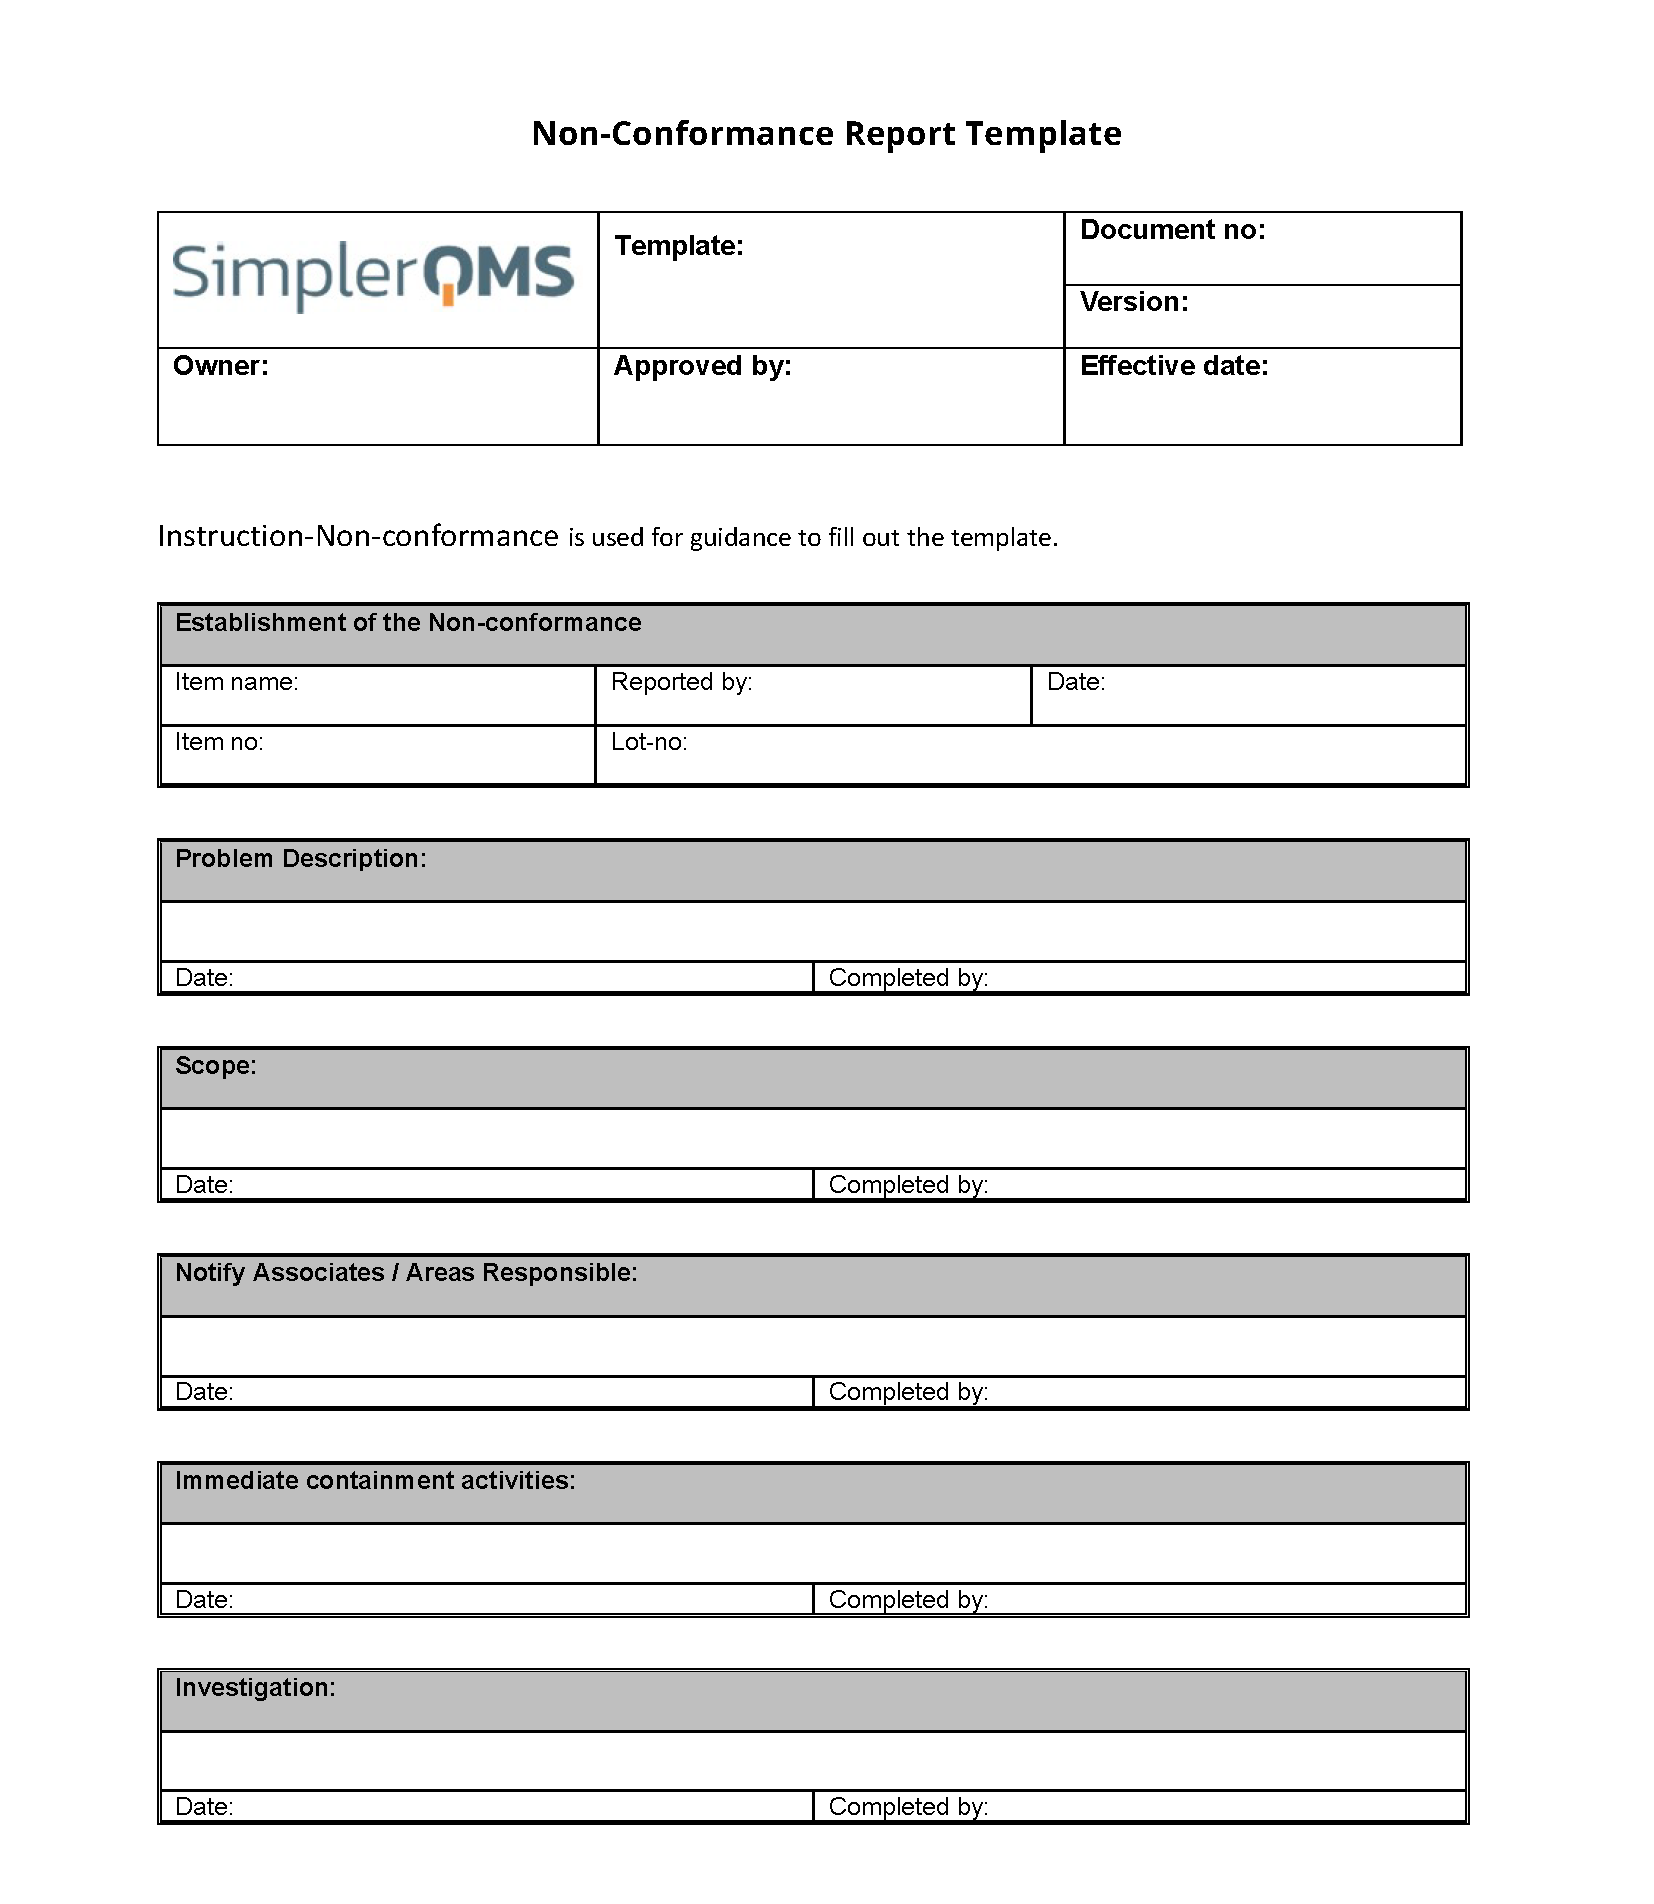 Non Conformance Report Template [Free Download] – SimplerQMS In Non Conformance Report Template